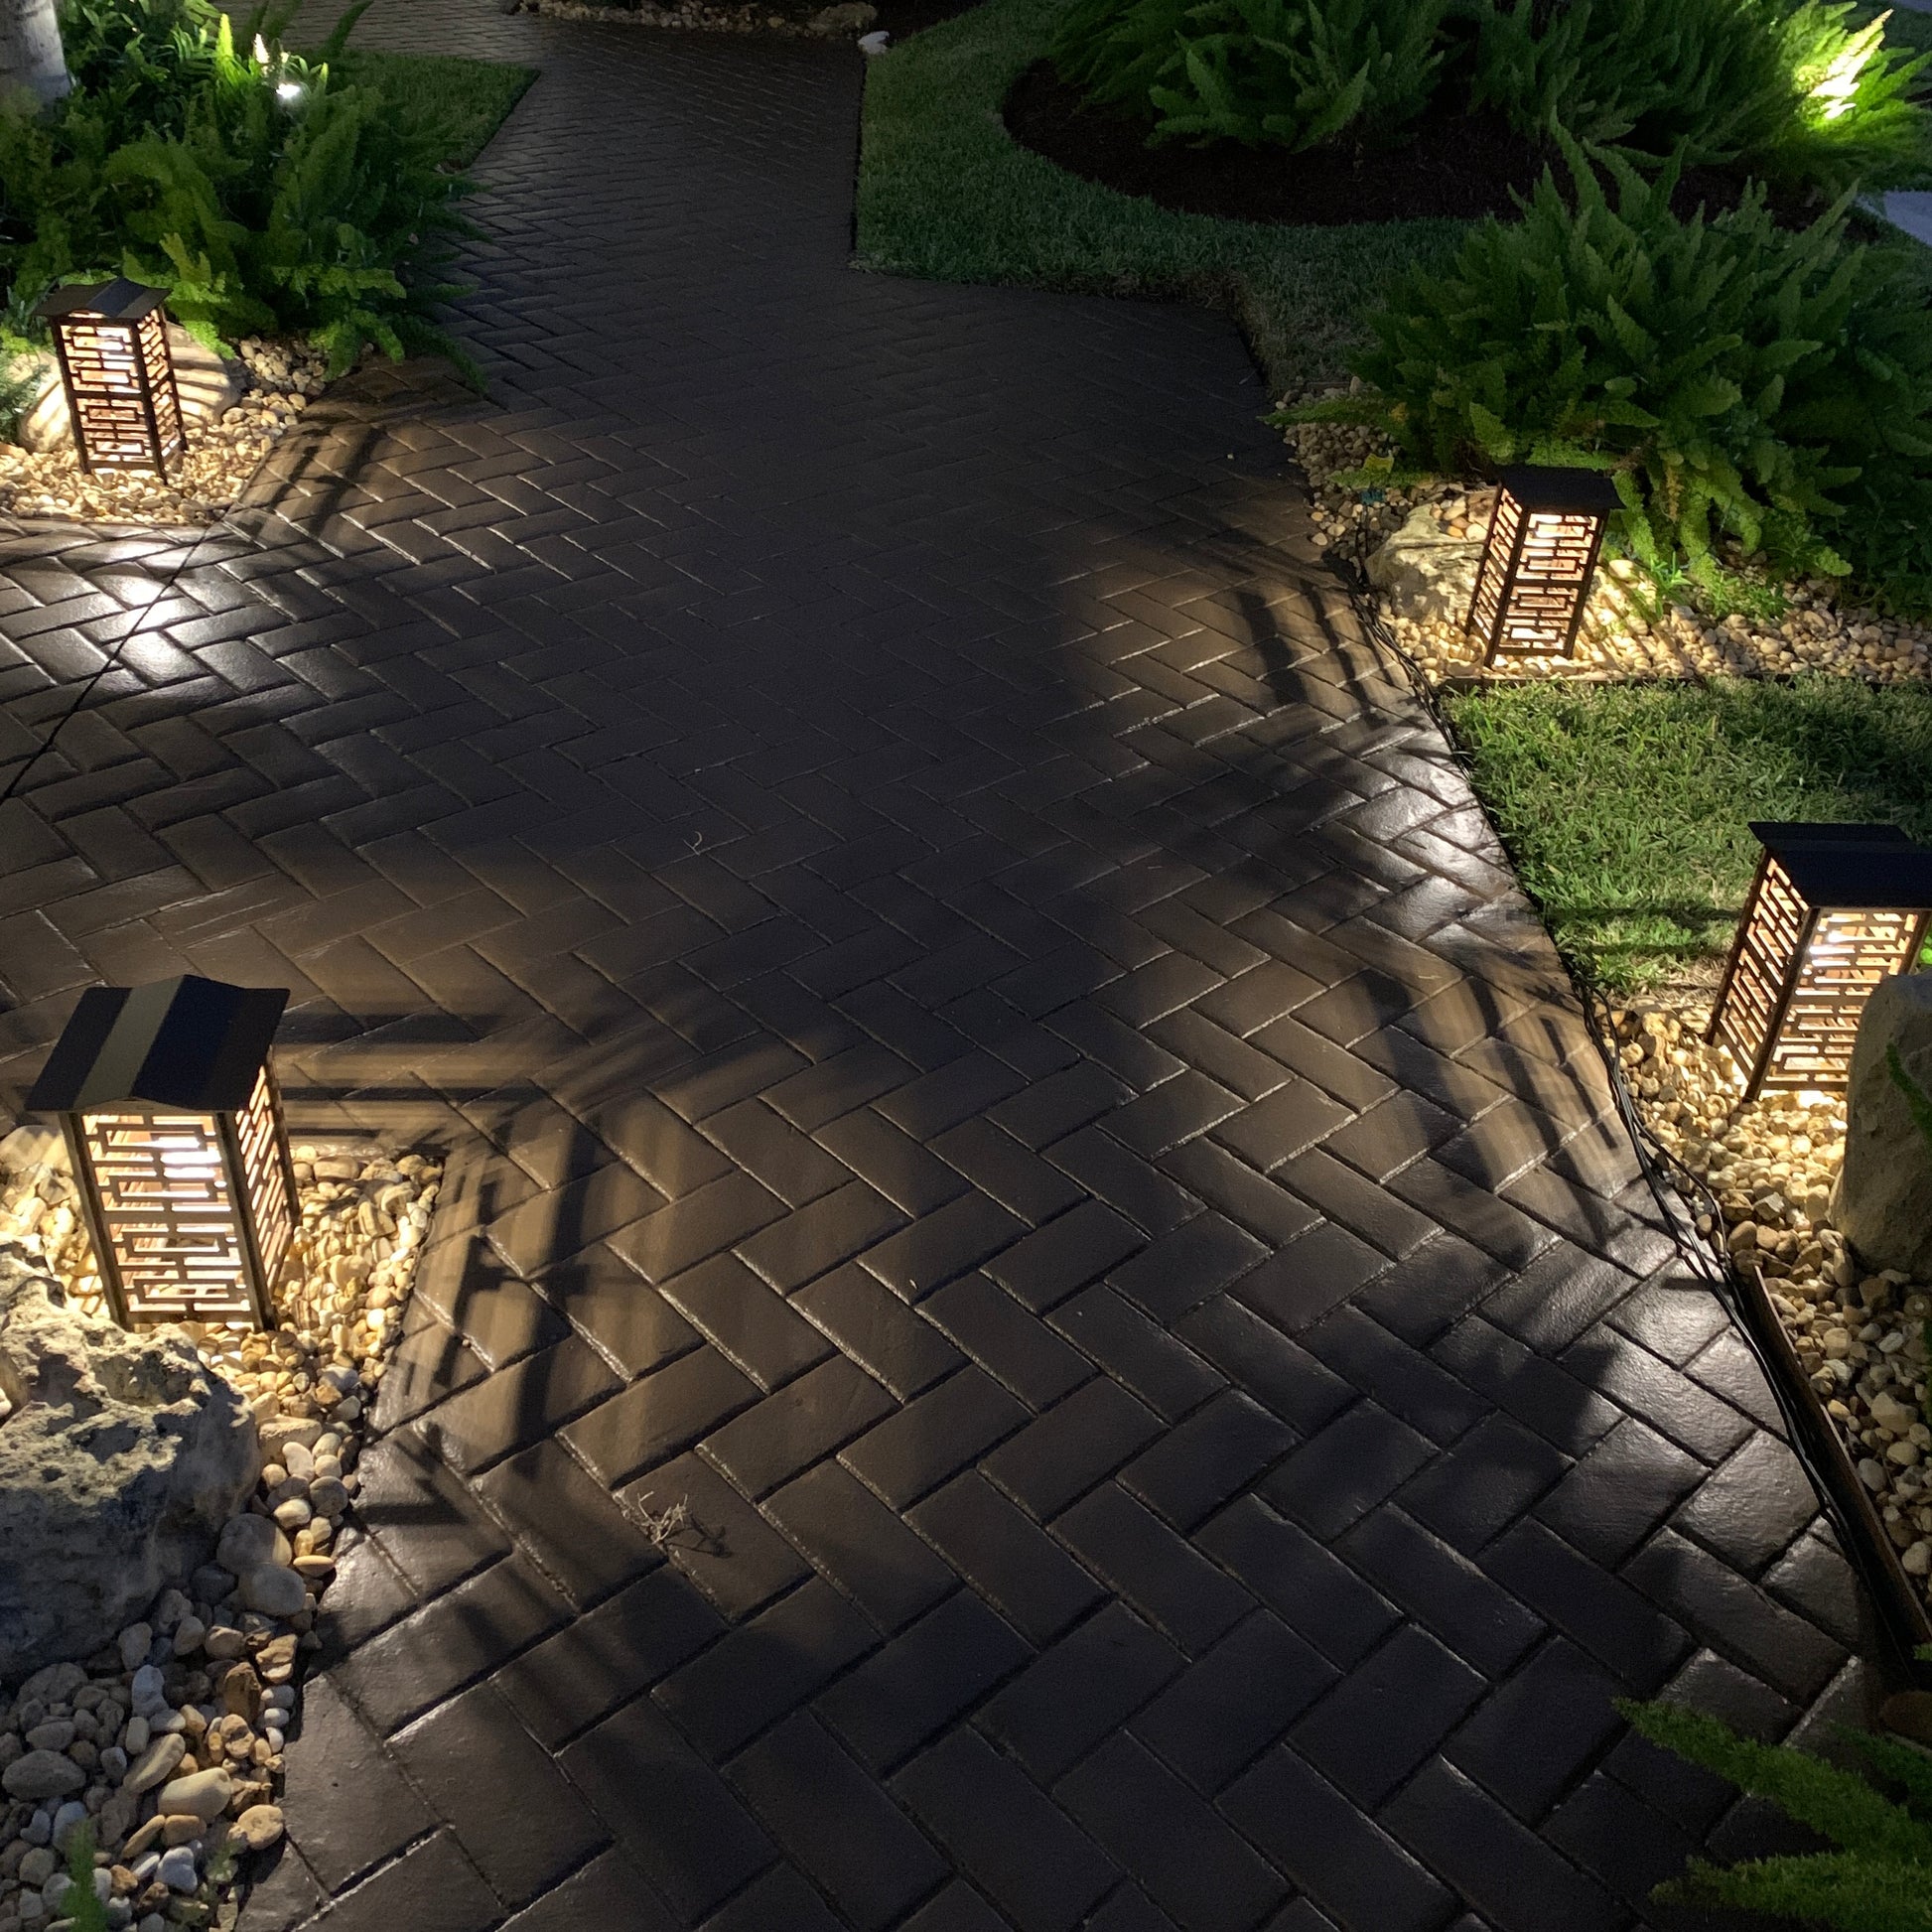 RadiantLight Polynesian Landscape Light - Garden Light at night